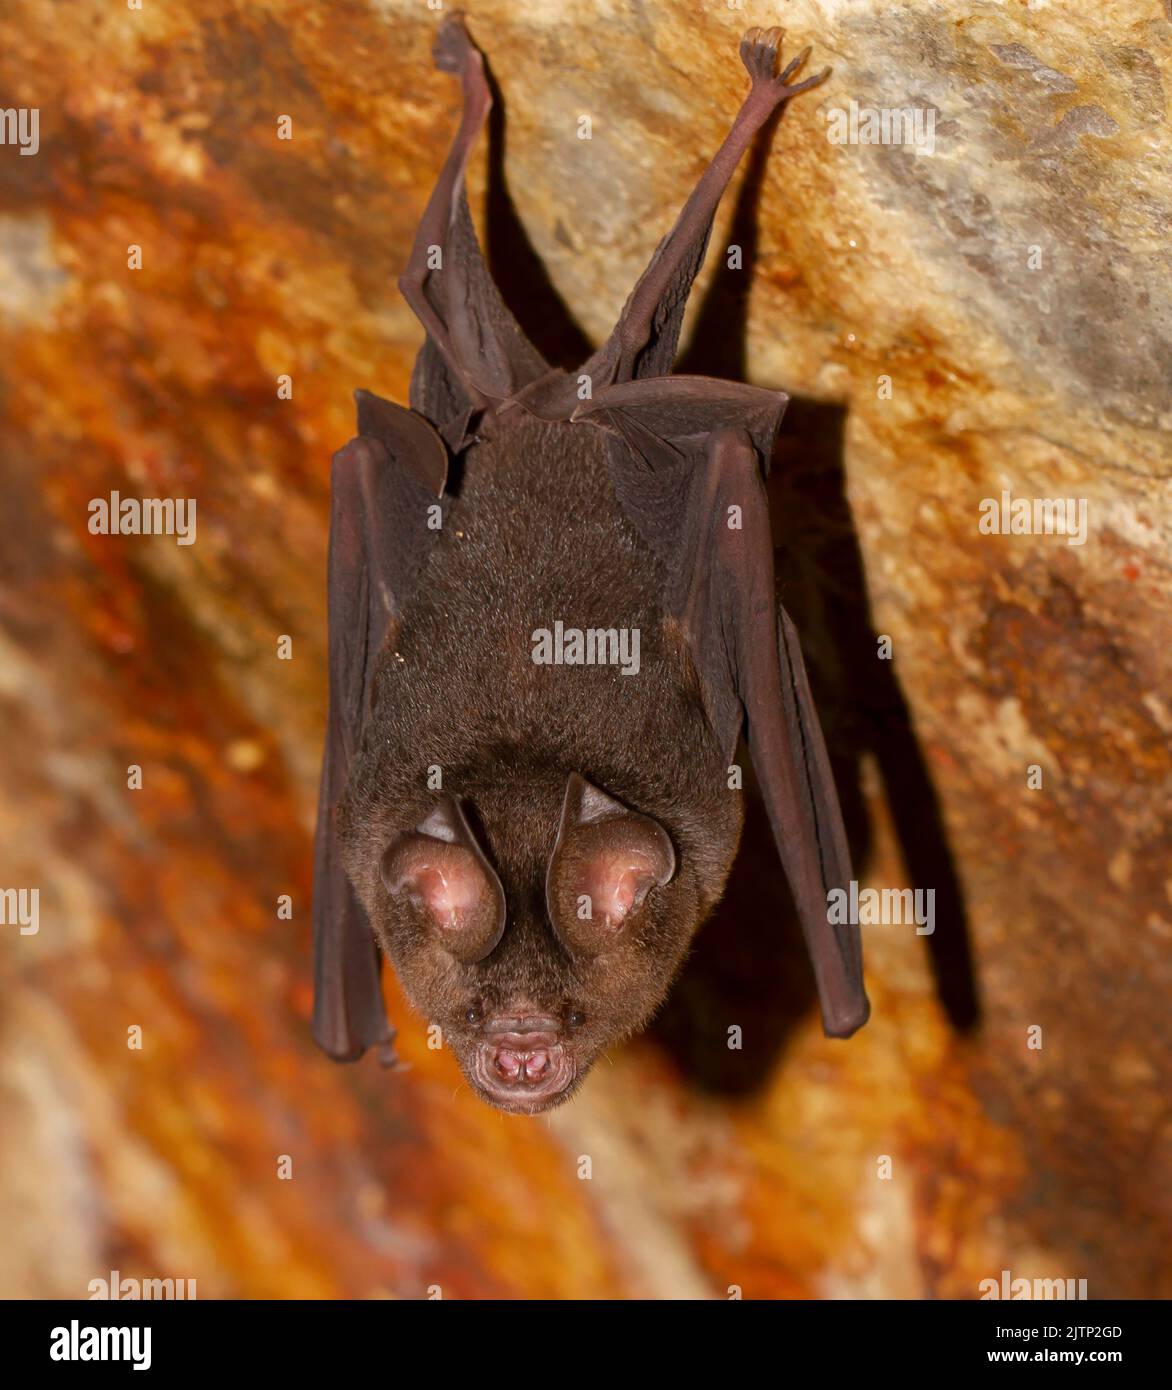 bat in una grotta; micro pipipistrello nella grotta; pipipistrello che riposa in una grotta; pipipistrello che riposa in una grotta; pipipistrello micro da Galle, Sri Lanka; Foto Stock